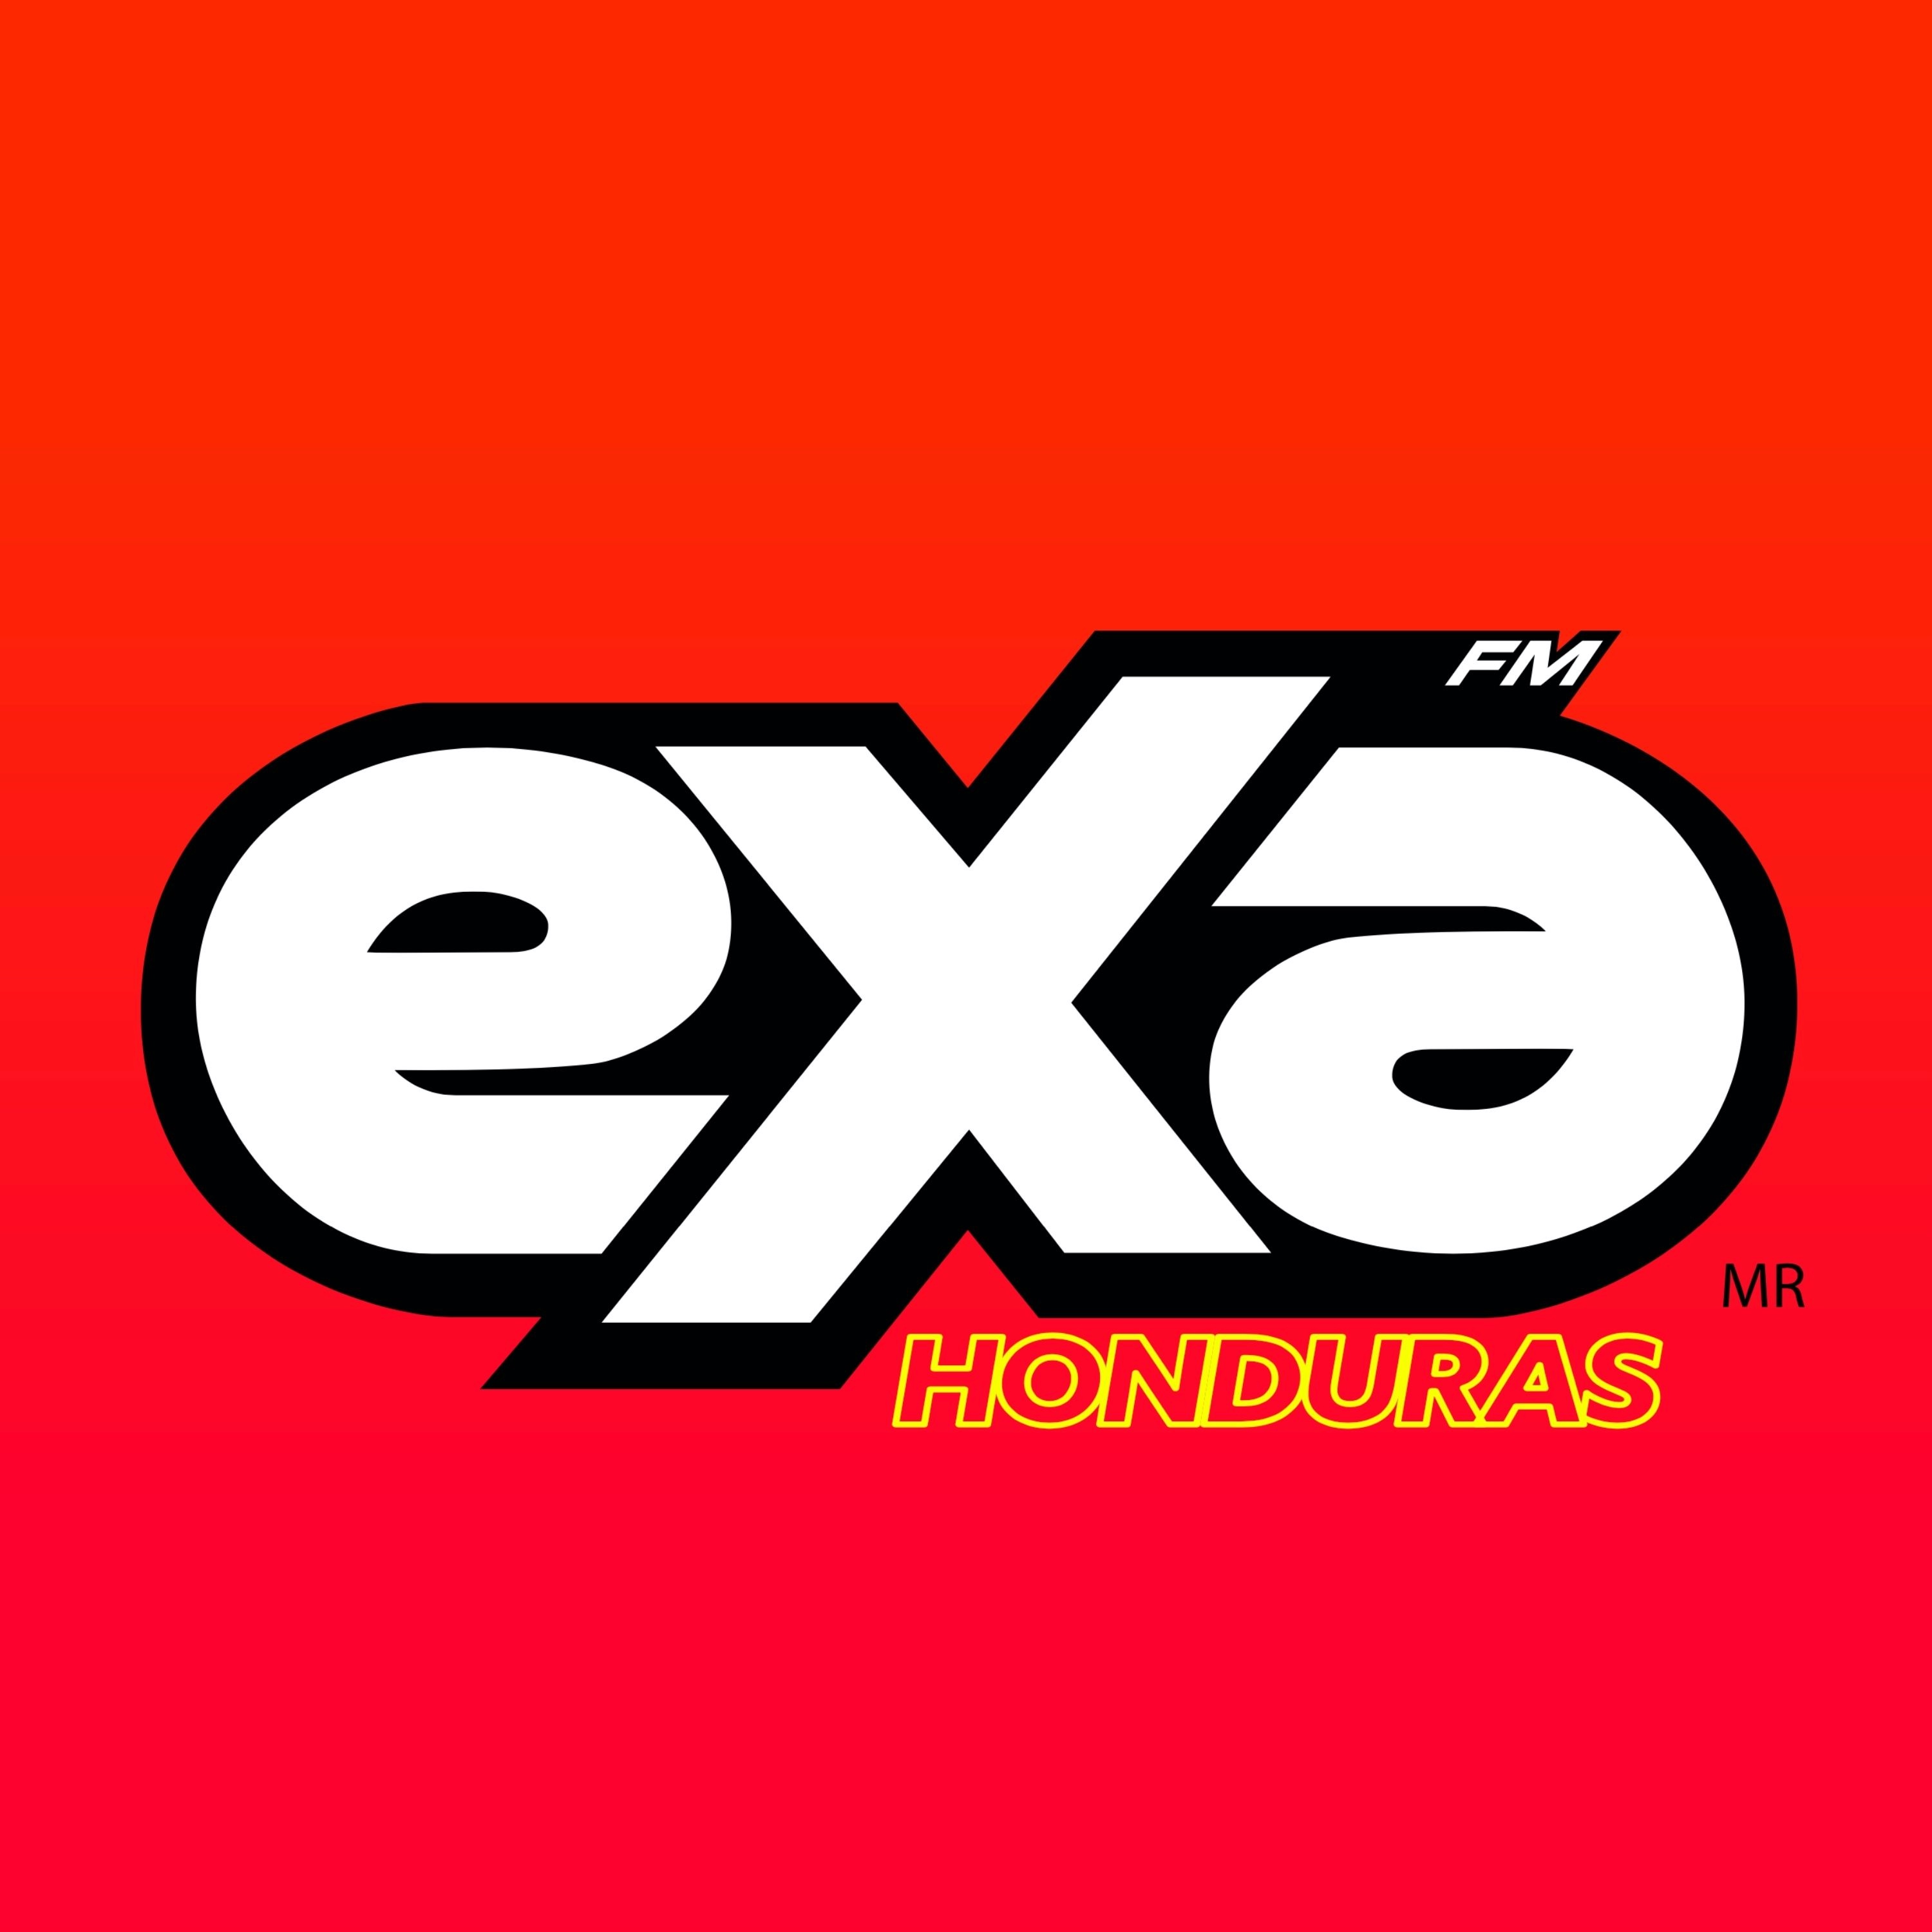 EXA FM Honduras